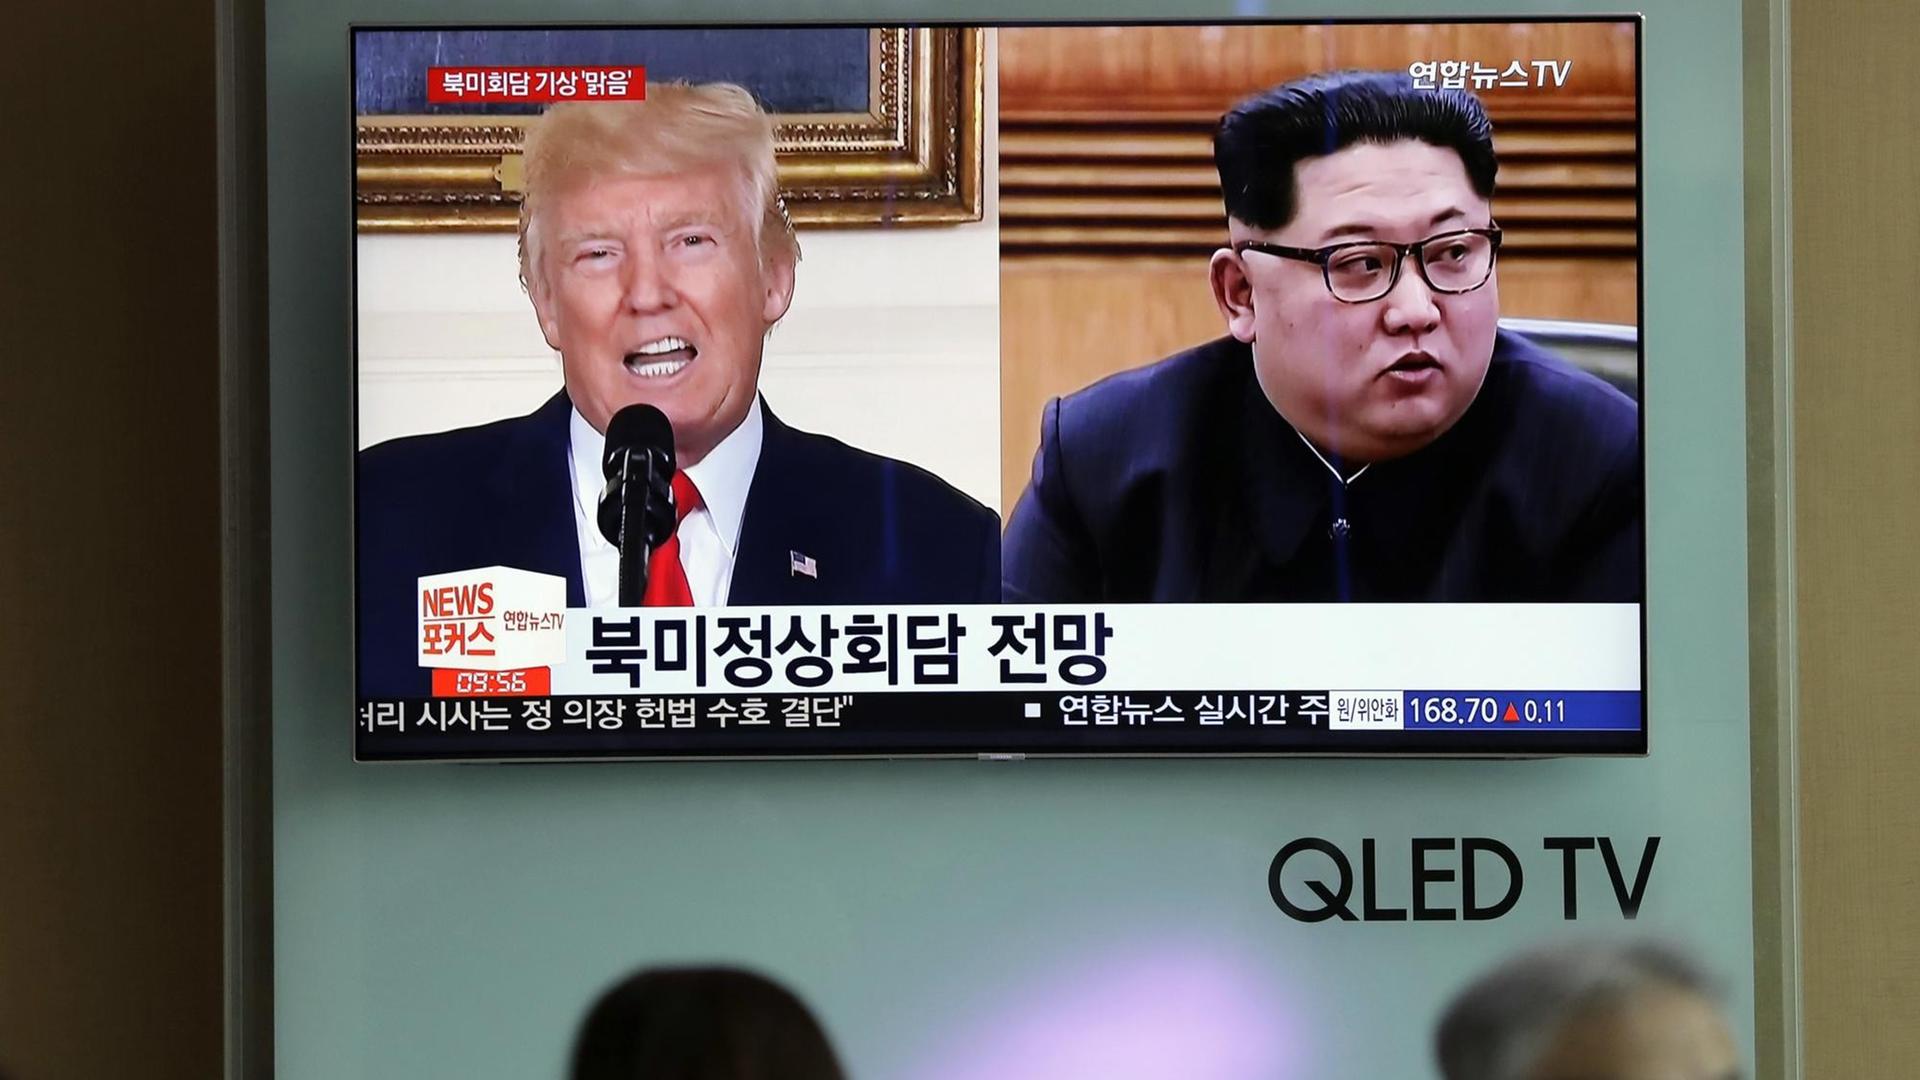 US-Präsident Trump und Nordkoreas Machthaber Kim Jong Un sind in einer Kombo auf einem Bild des südkoreanischen Fernsehens zu sehen.